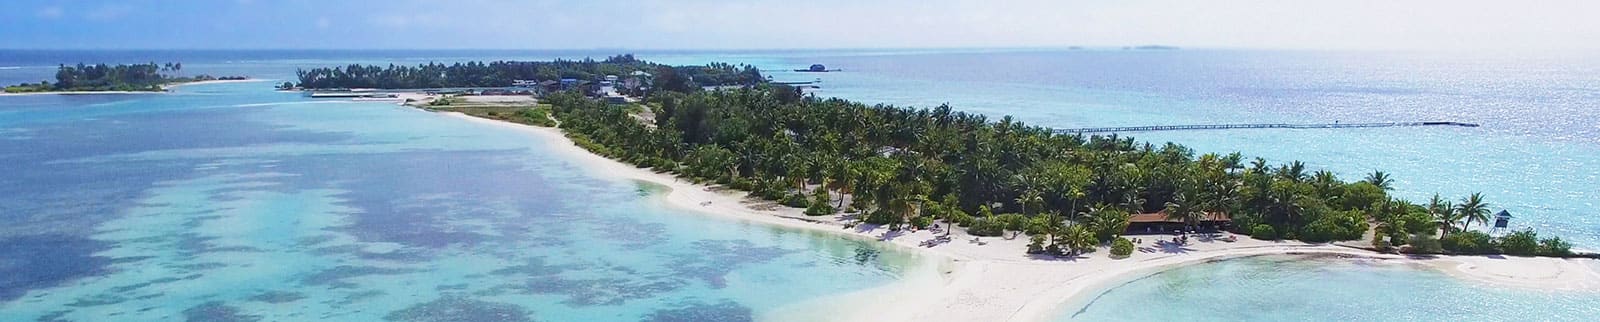 cruise dubai and maldives